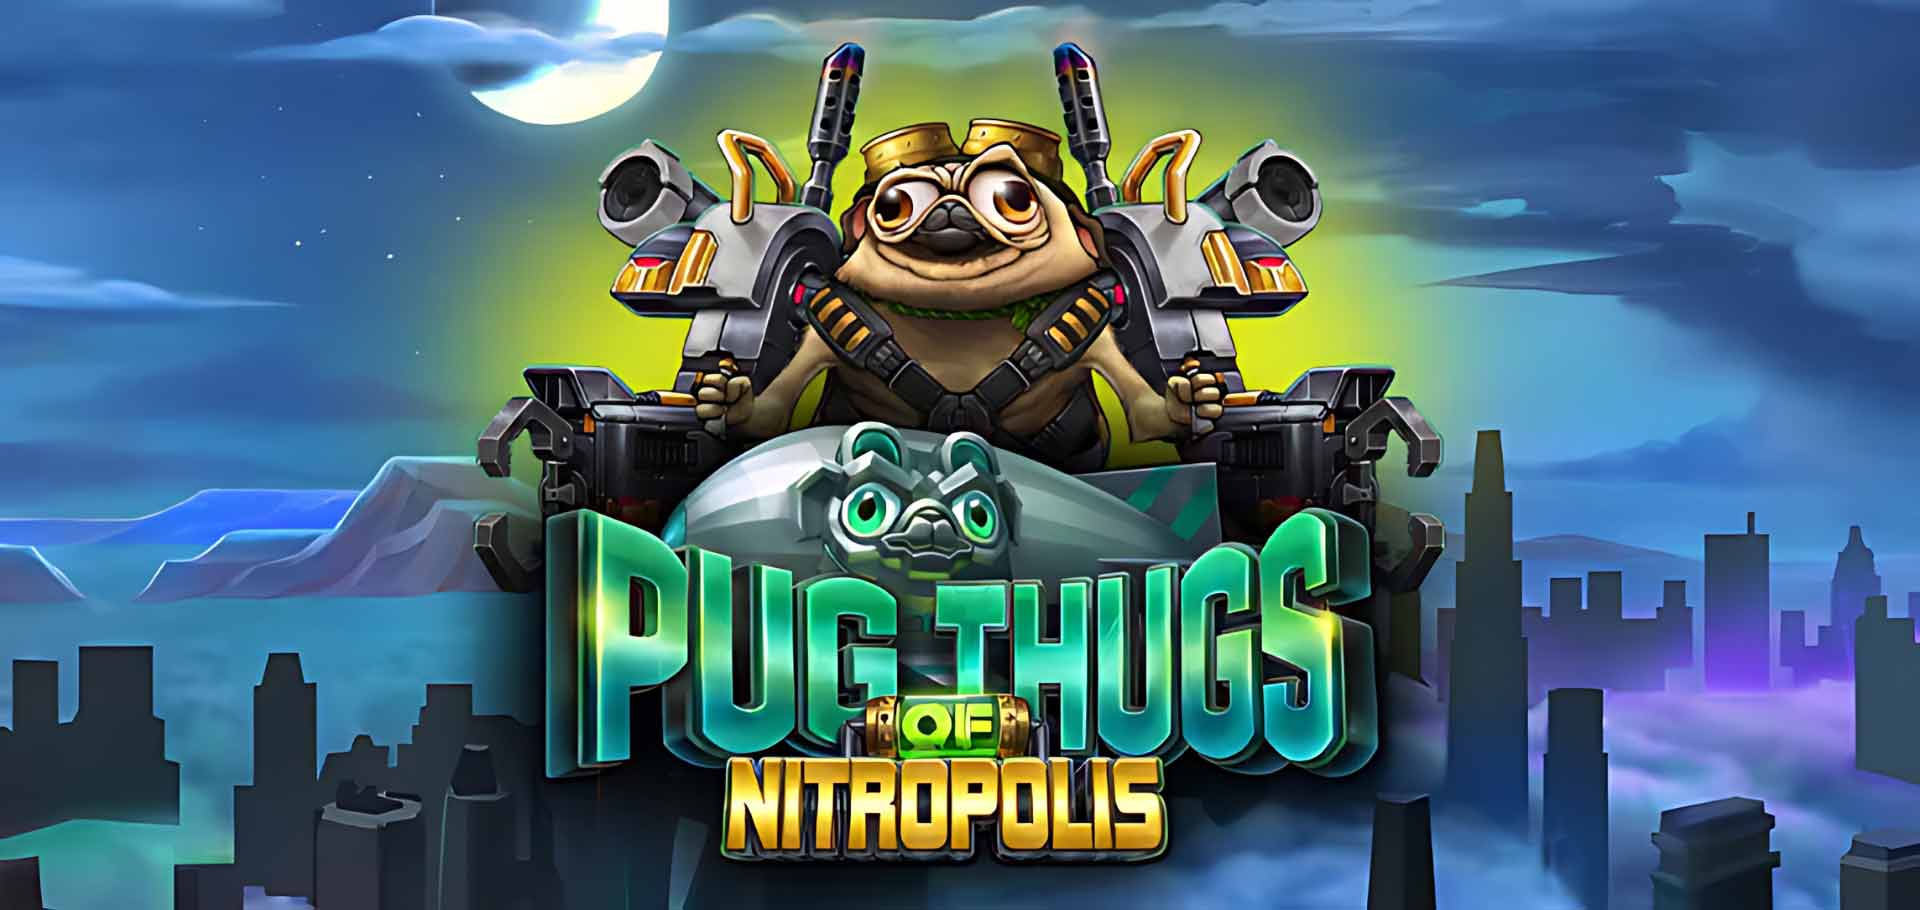 Pug Thugs of Nitropolis online slot